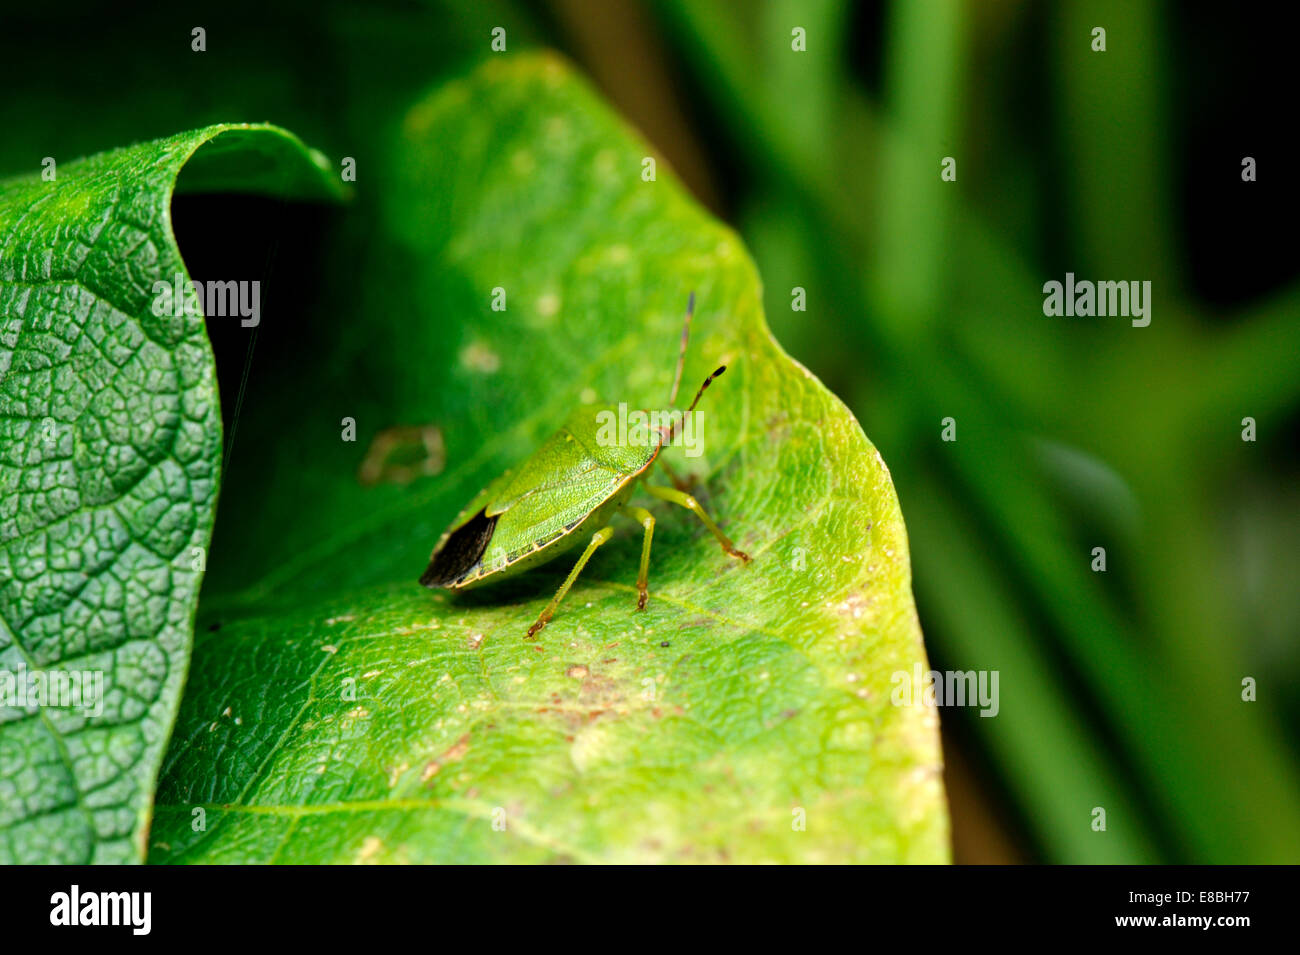 Vue latérale du bouclier vert commun Bug, Palomena prasina, des profils sur des feuilles de haricots, du sud-ouest de l'Angleterre Banque D'Images